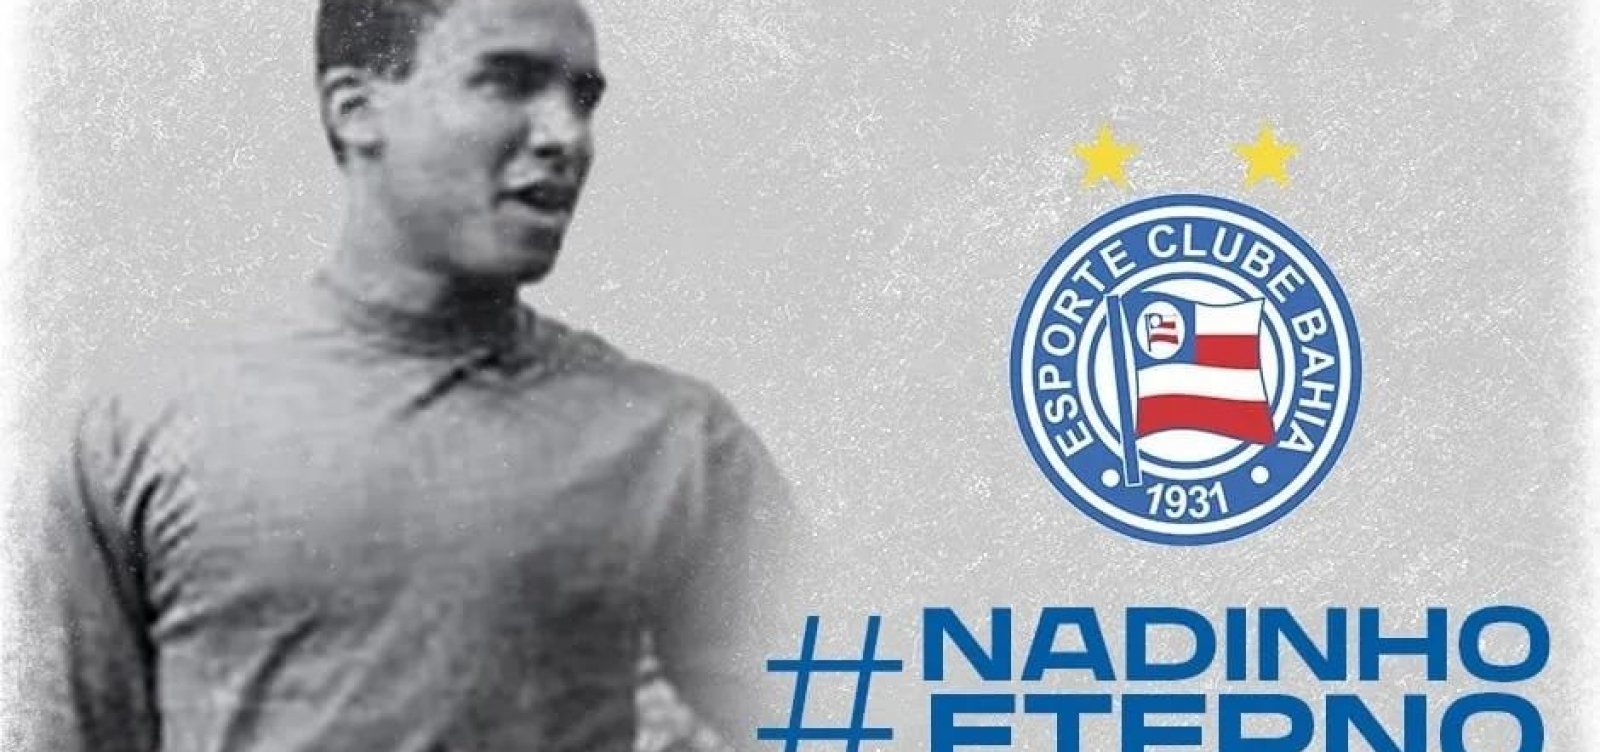 Morre Nadinho, goleiro do título do Bahia em 1959